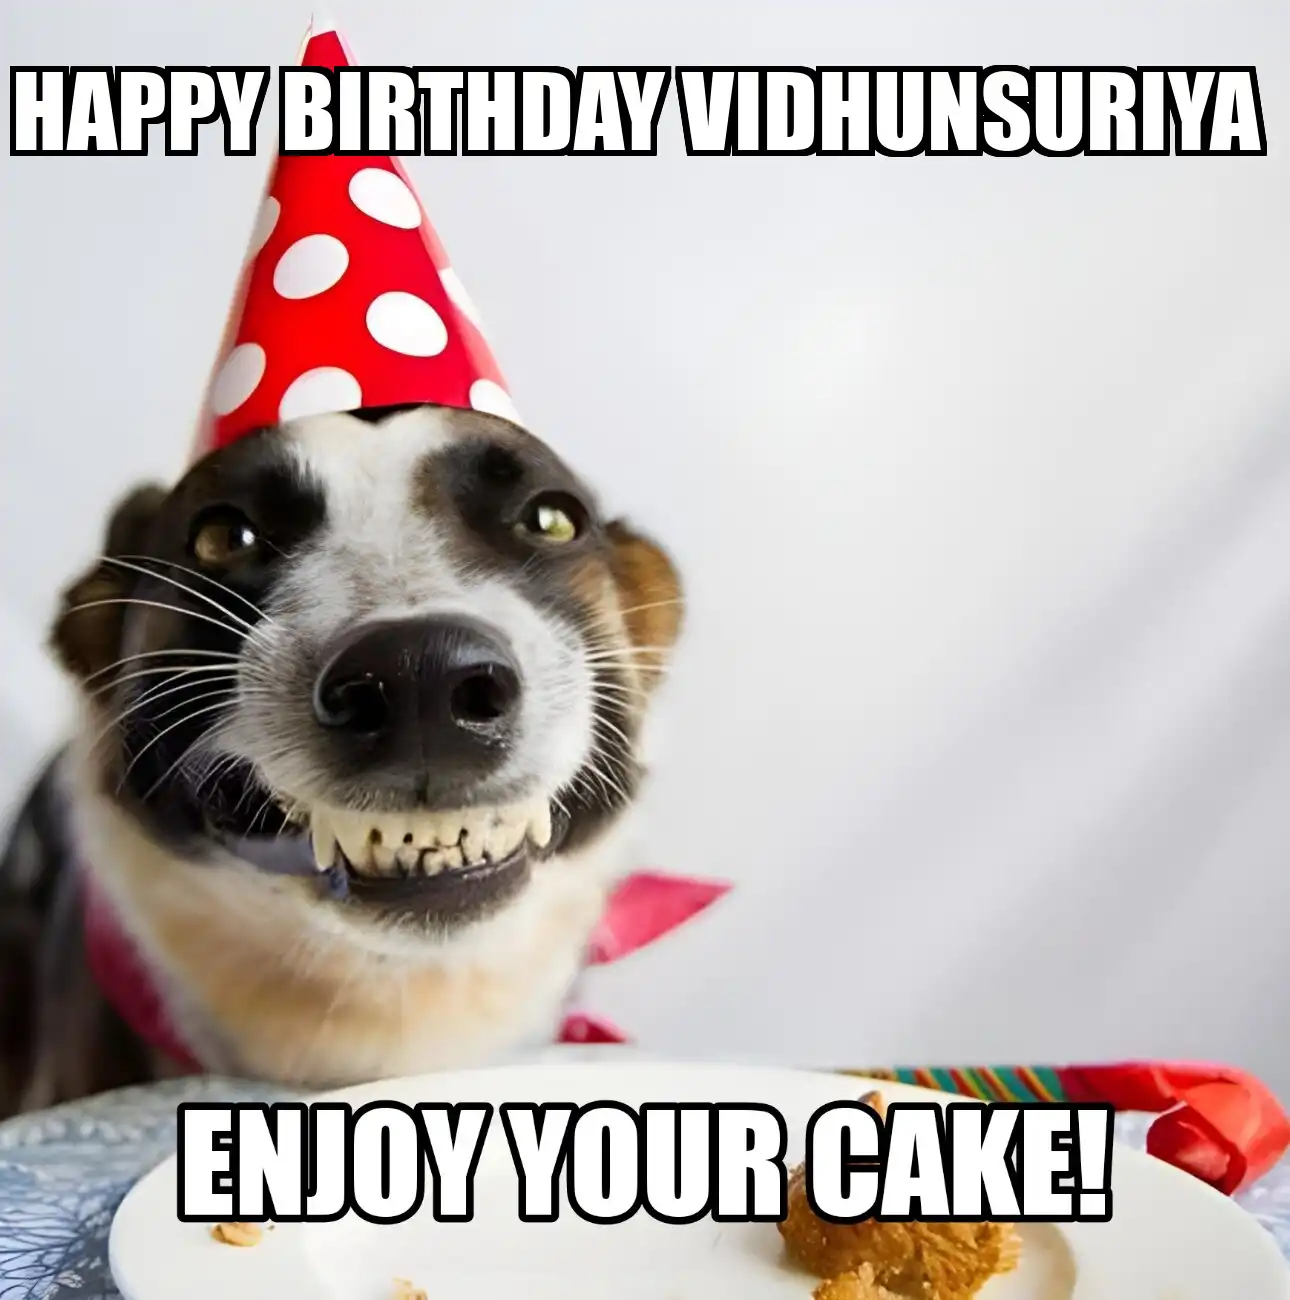 Happy Birthday Vidhunsuriya Enjoy Your Cake Dog Meme